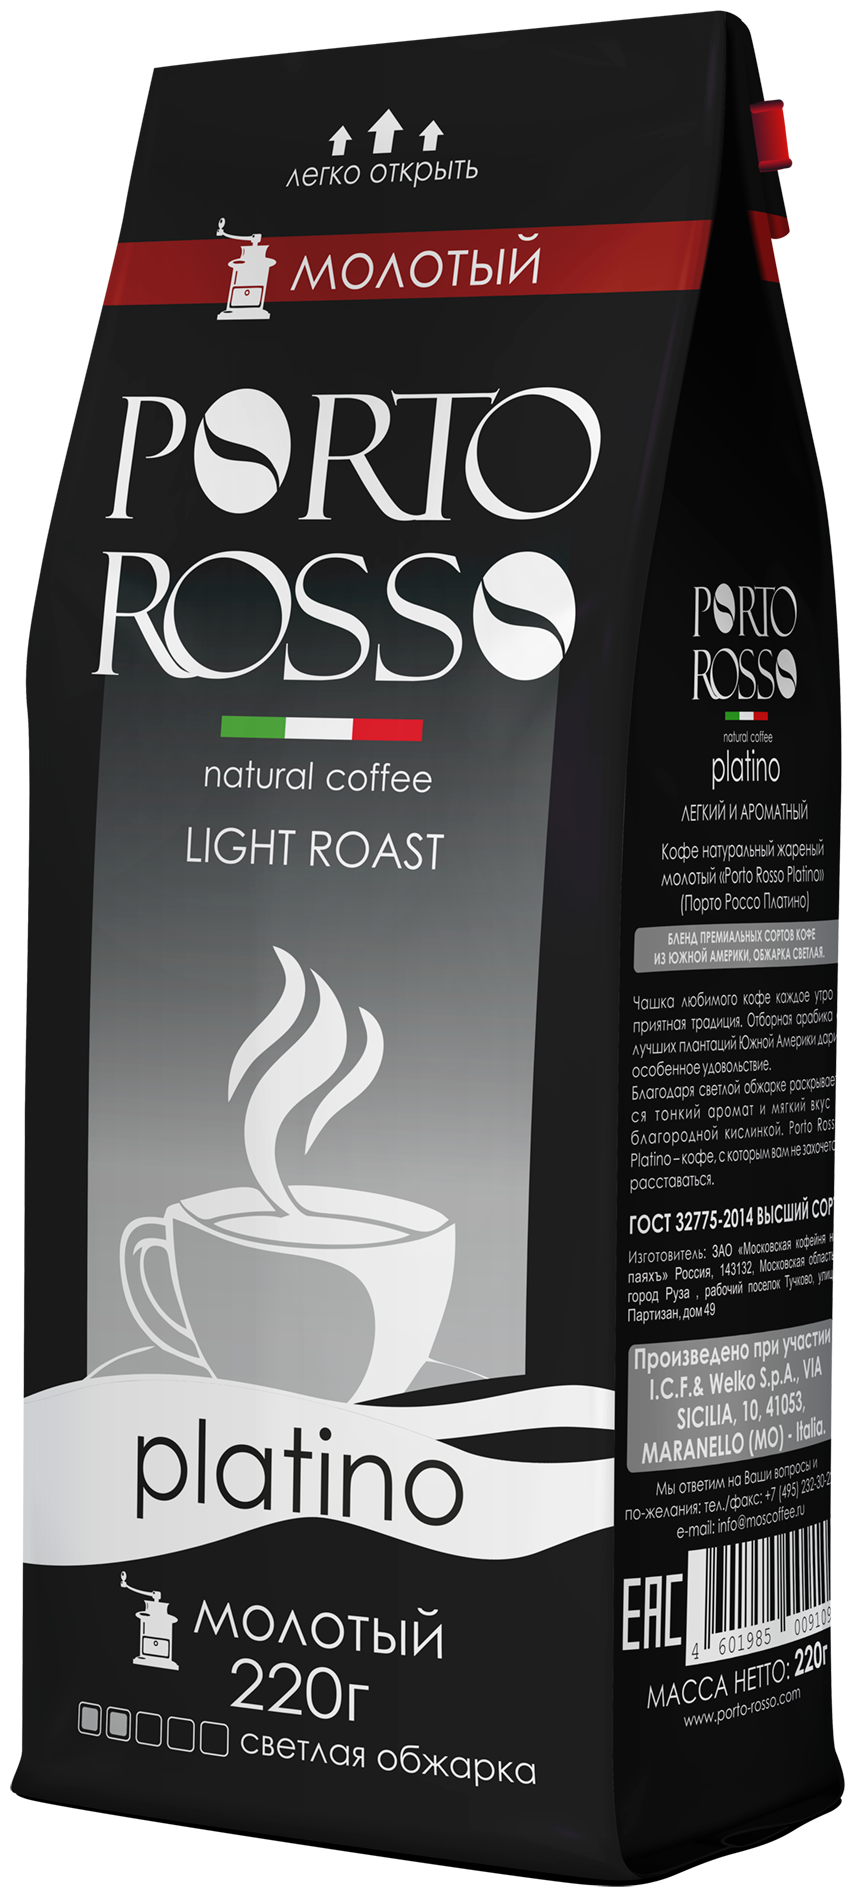 Кофе молотый Porto Rosso platino 220 г